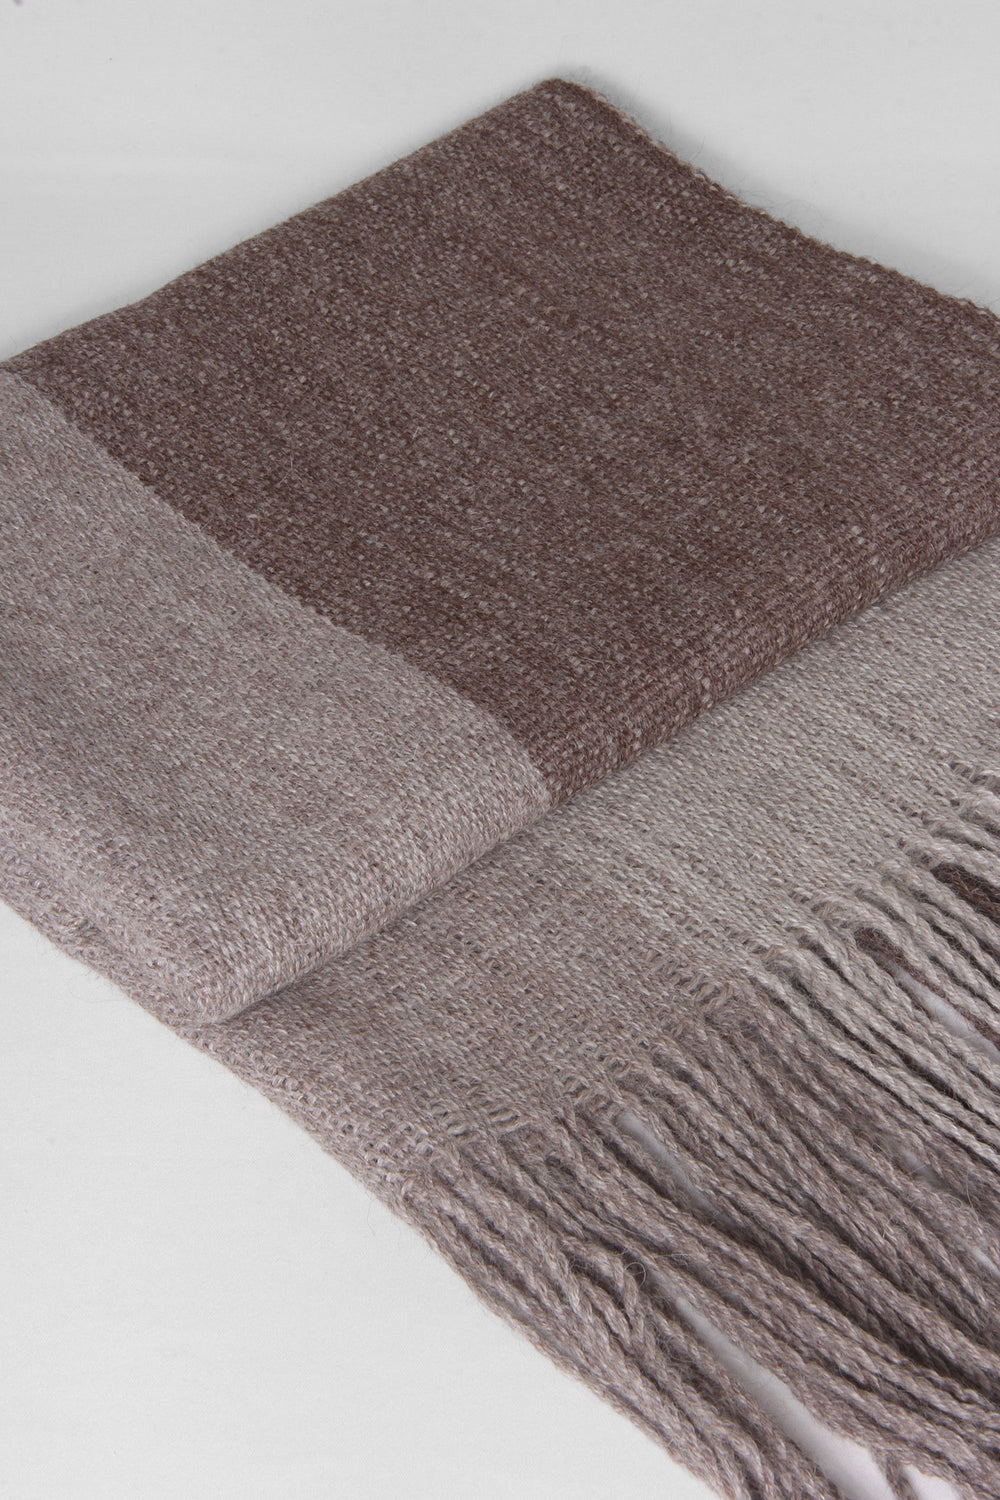 Gestreifter Schal aus Alpaka Wolle in drei Farben aus Bronze, gefaltet